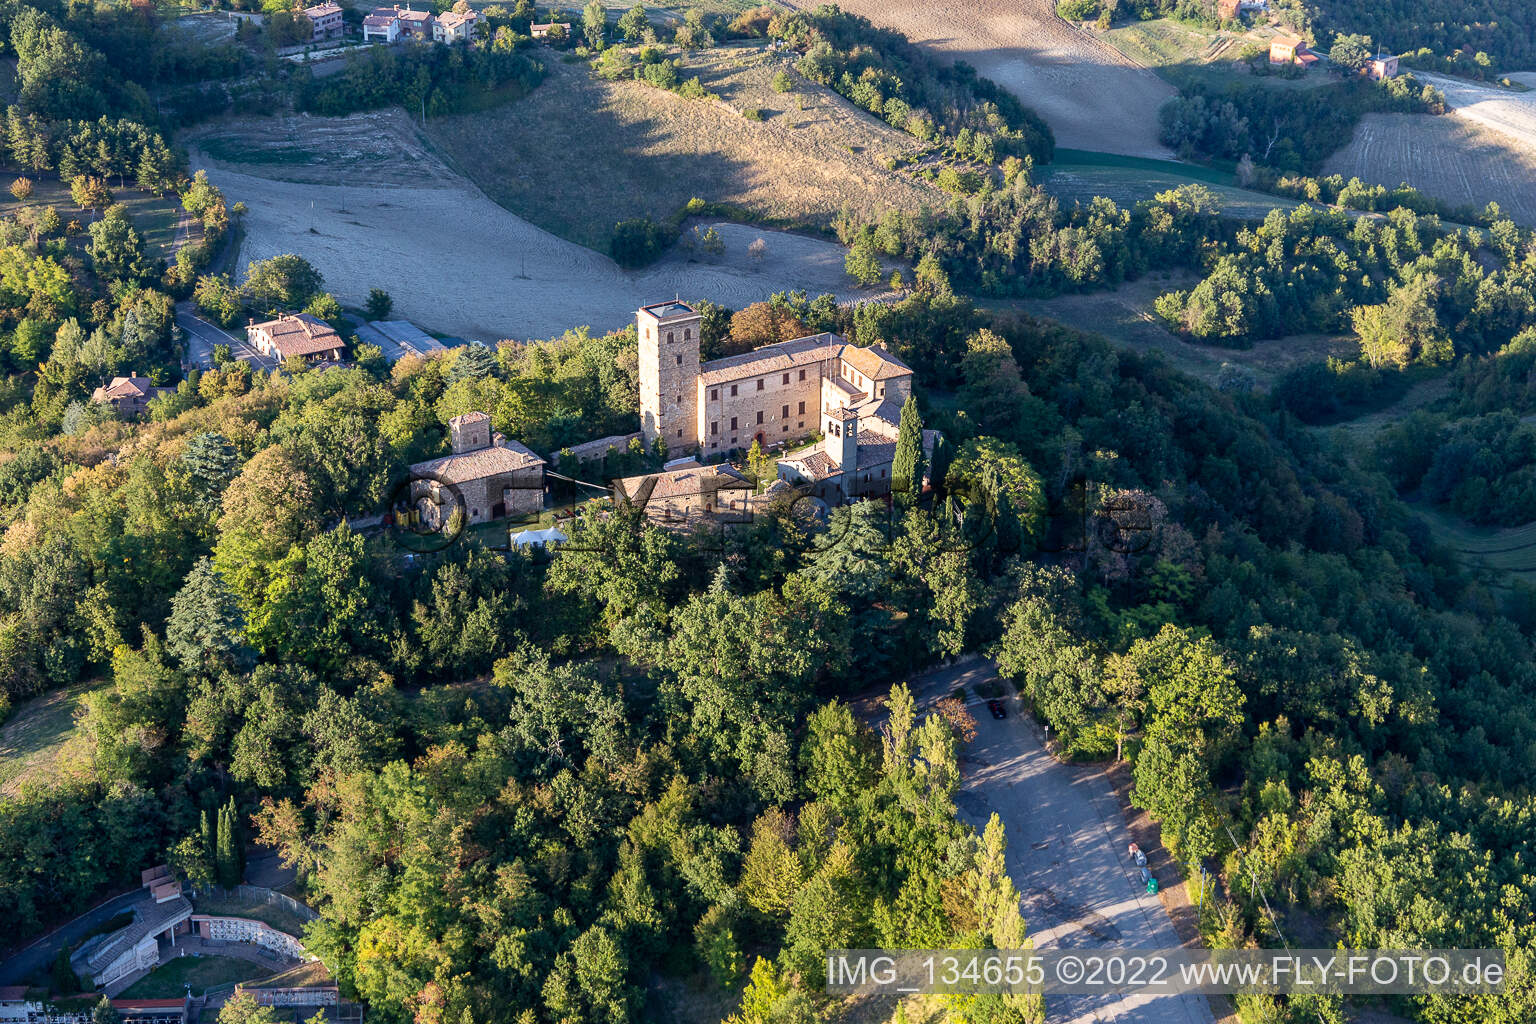 Château de Montegibbio Château de Montegibbio à Sassuolo dans le département Modena, Italie vue d'en haut